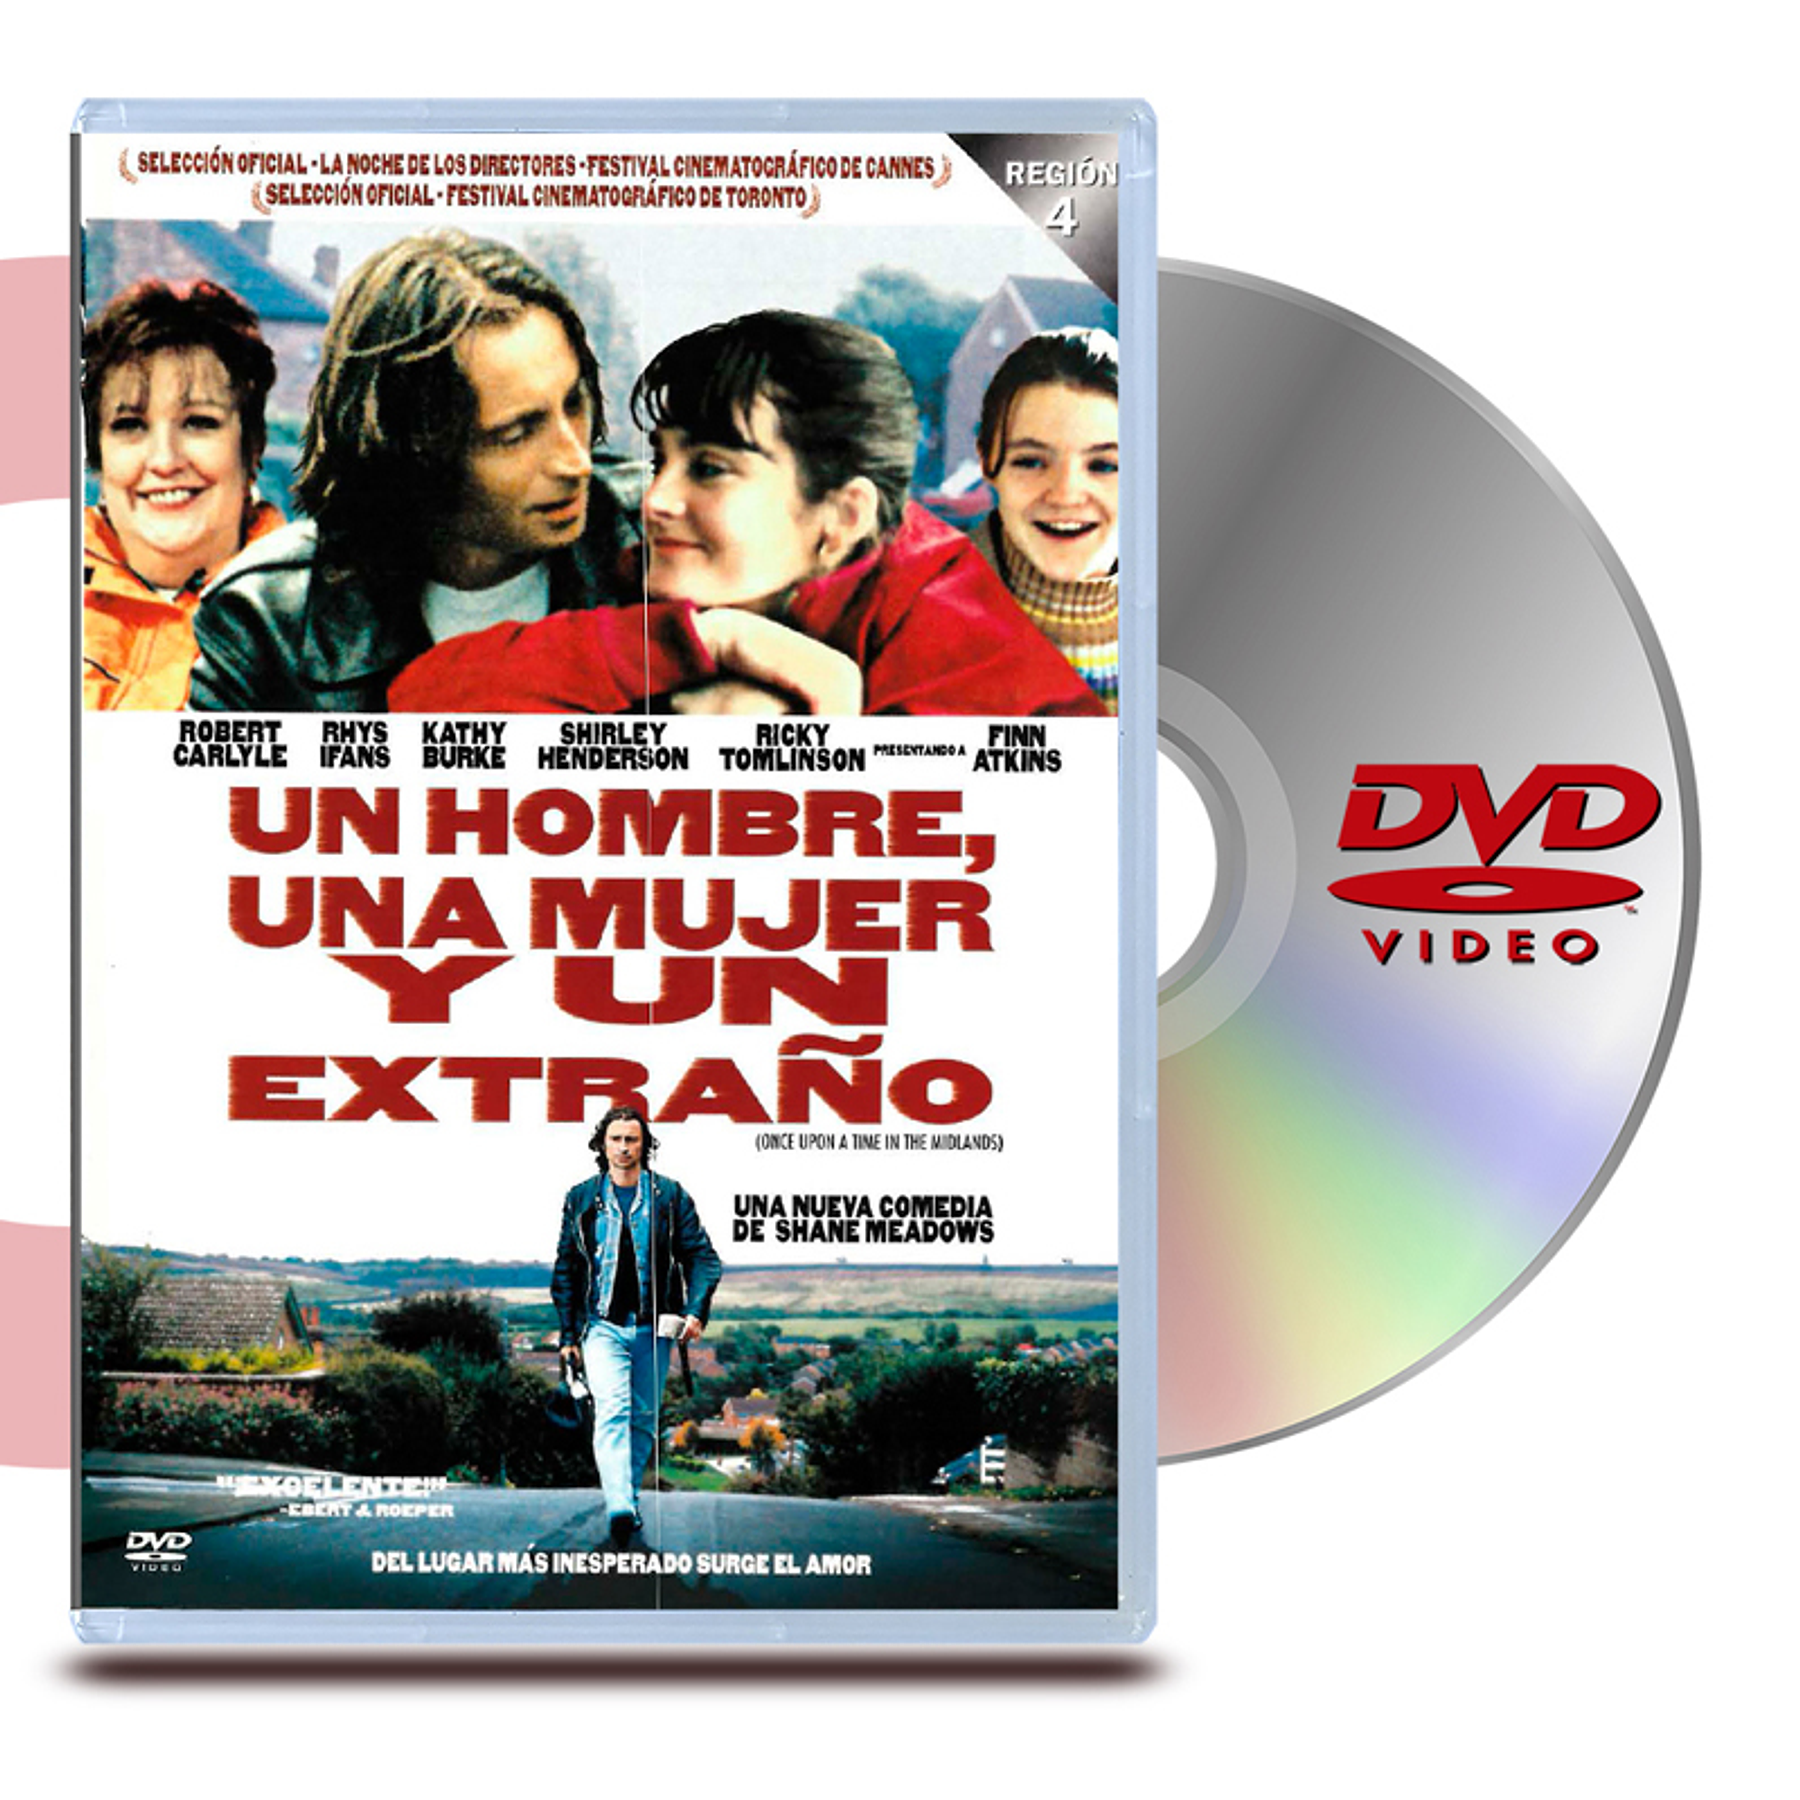 DVD UN HOMBRE, UNA MUJER Y UN EXTRAÑO